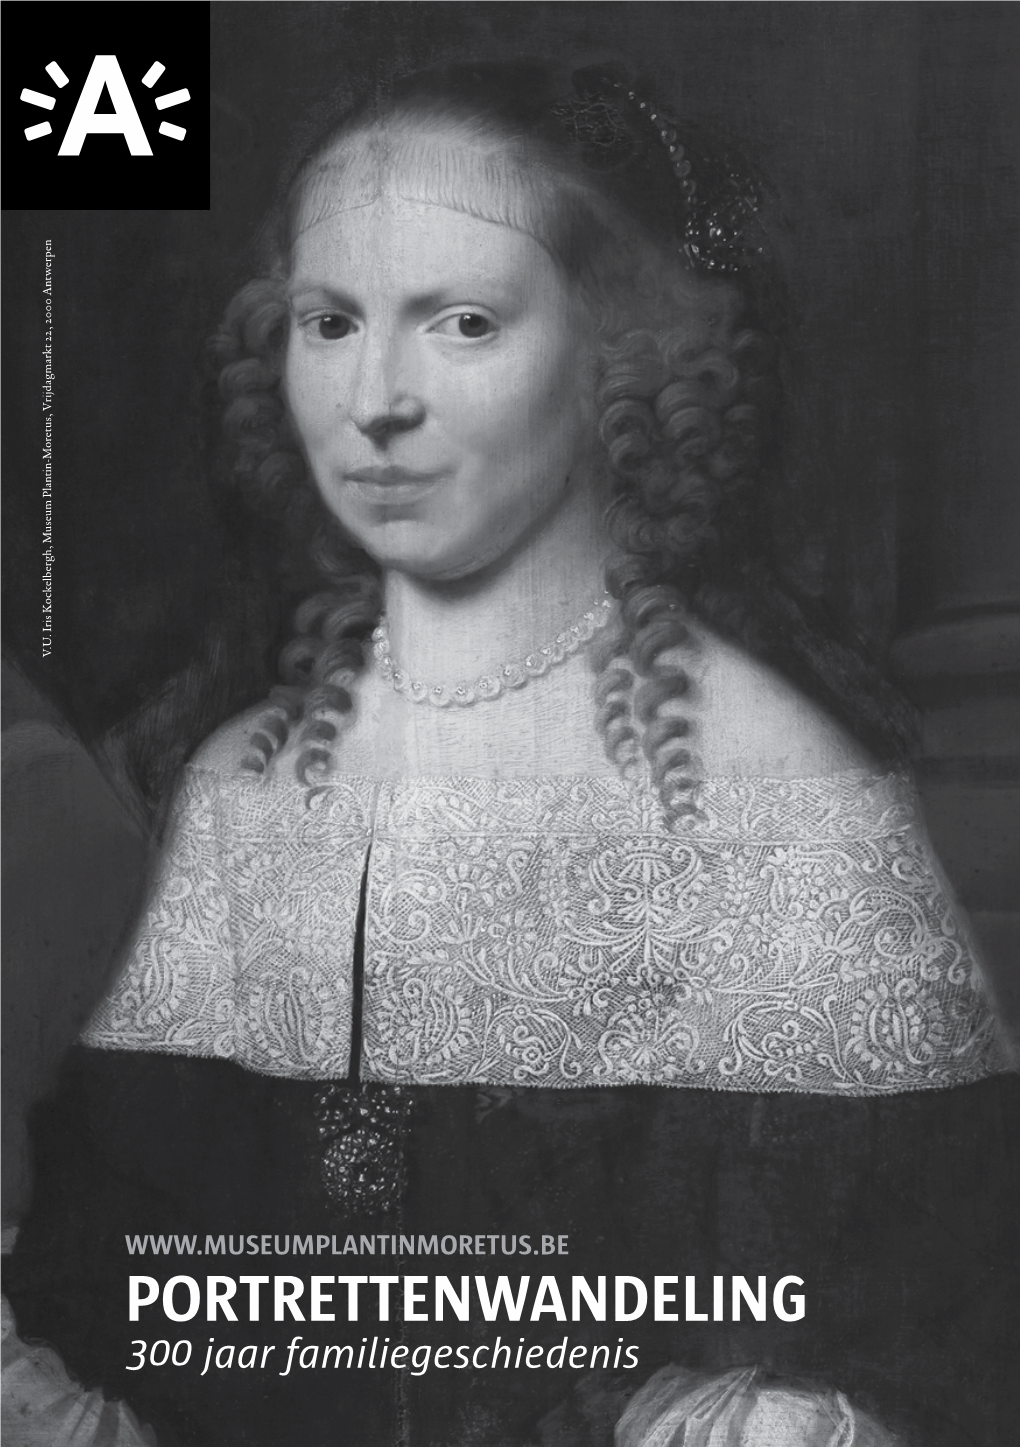 Martina Plantin (1527-1598) Nicolaas Elisabeth Janssens (1543-1610) (1550-1616) De Sweert X De Bisthoven (1551-1598) (1563-1594)